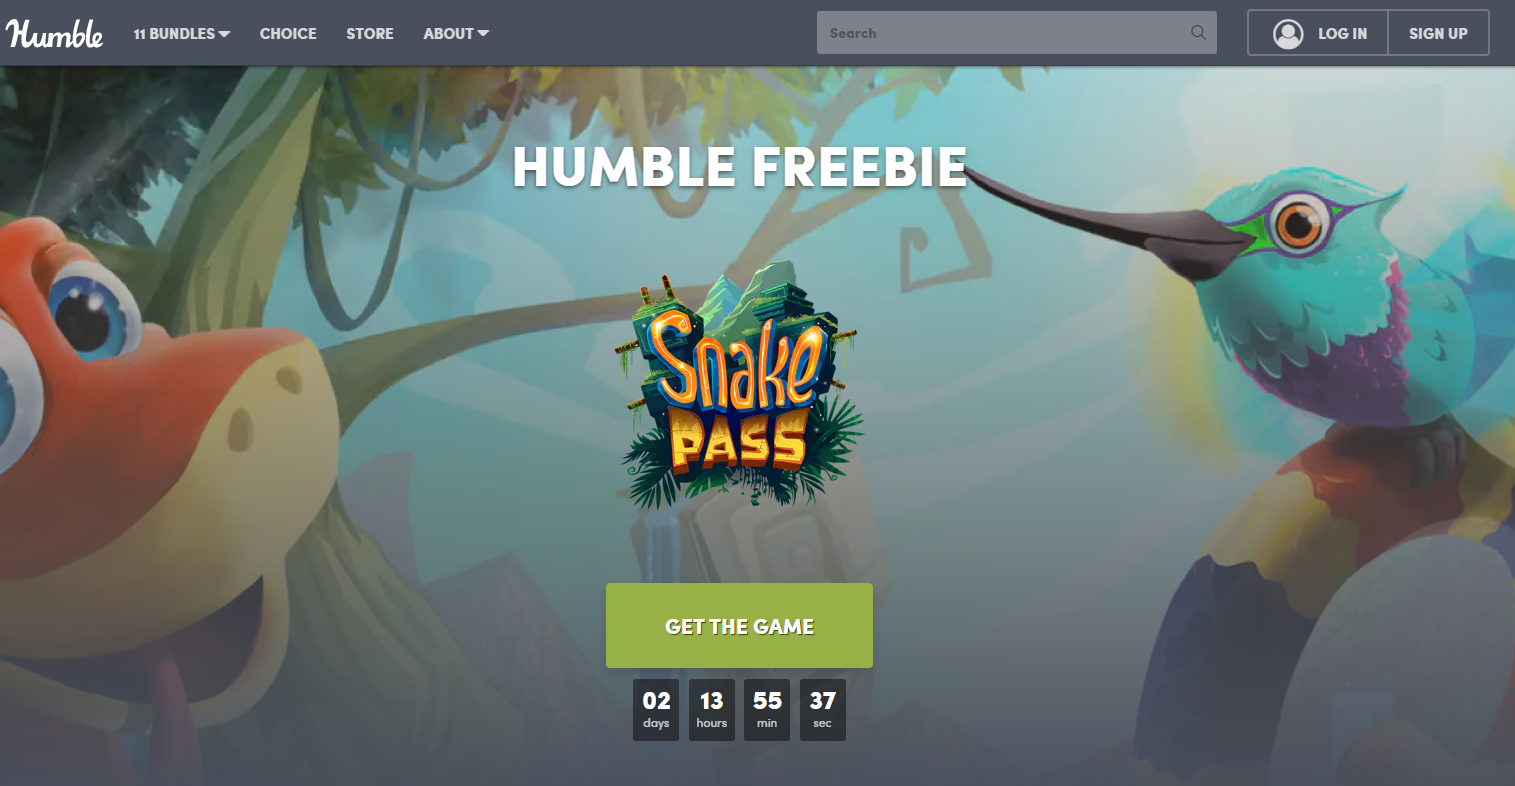 喜加一：HB商店免费领休闲益智游戏《Snake Pass》